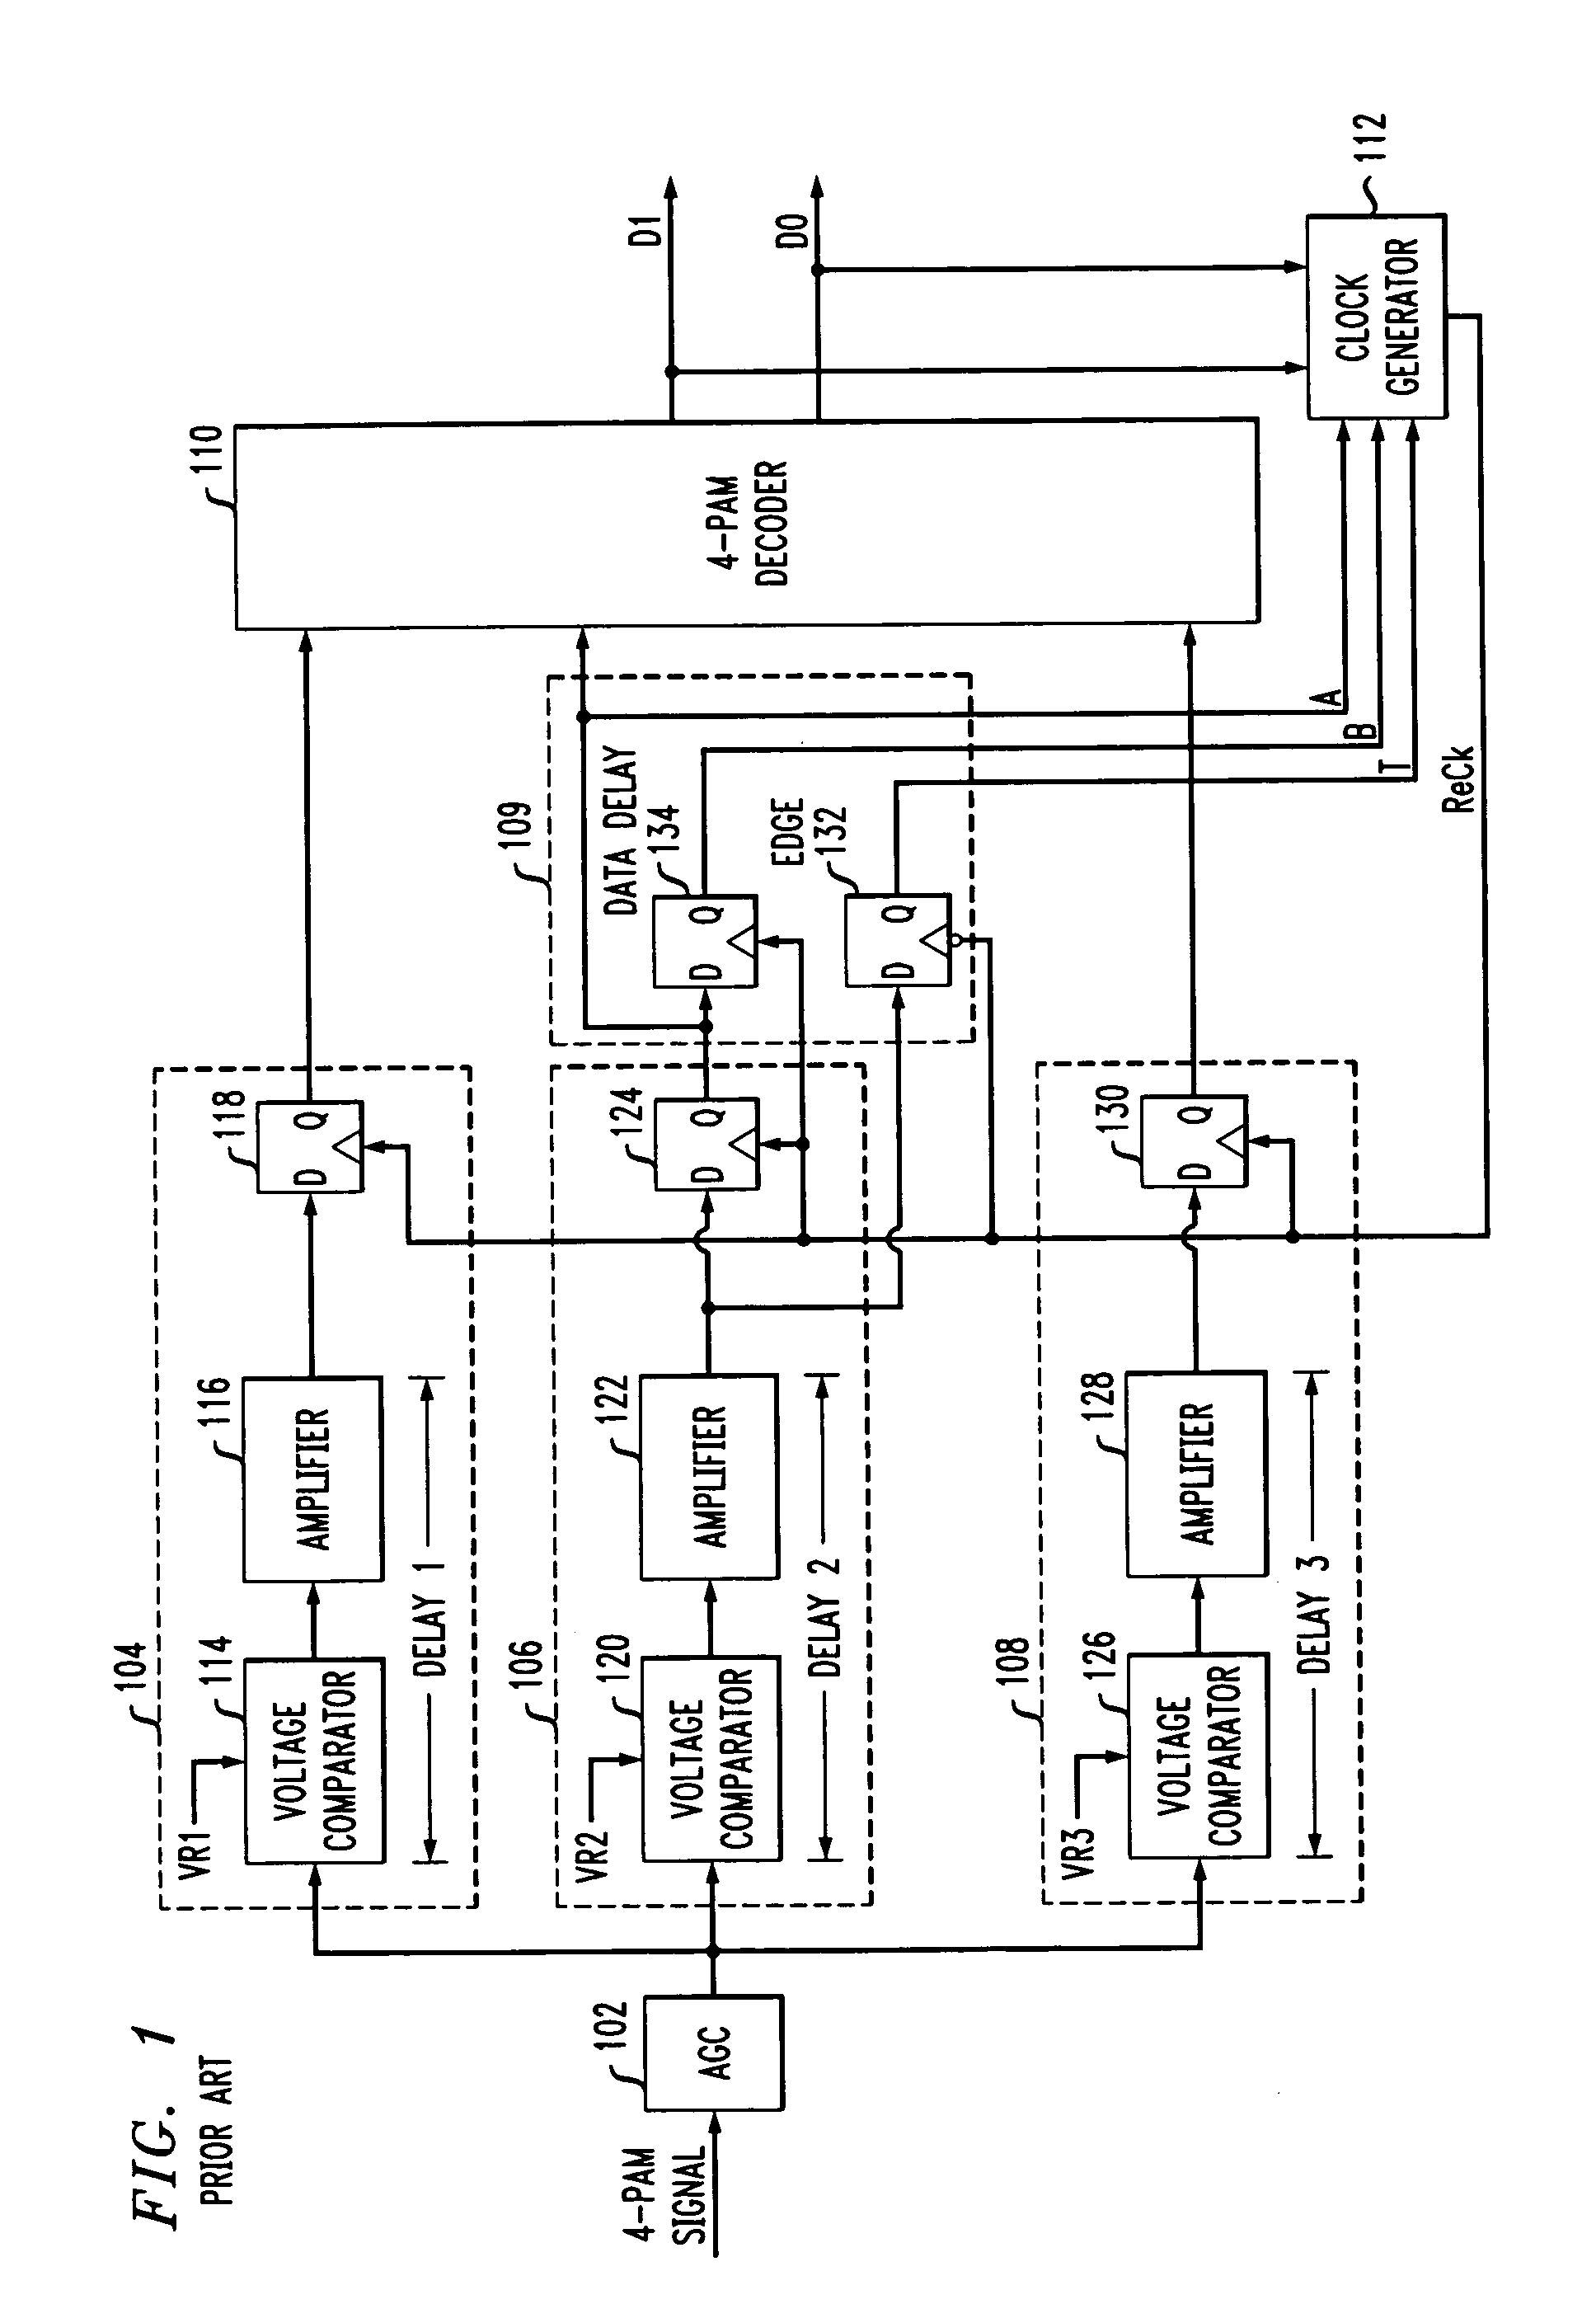 Multi-level pulse amplitude modulation receiver